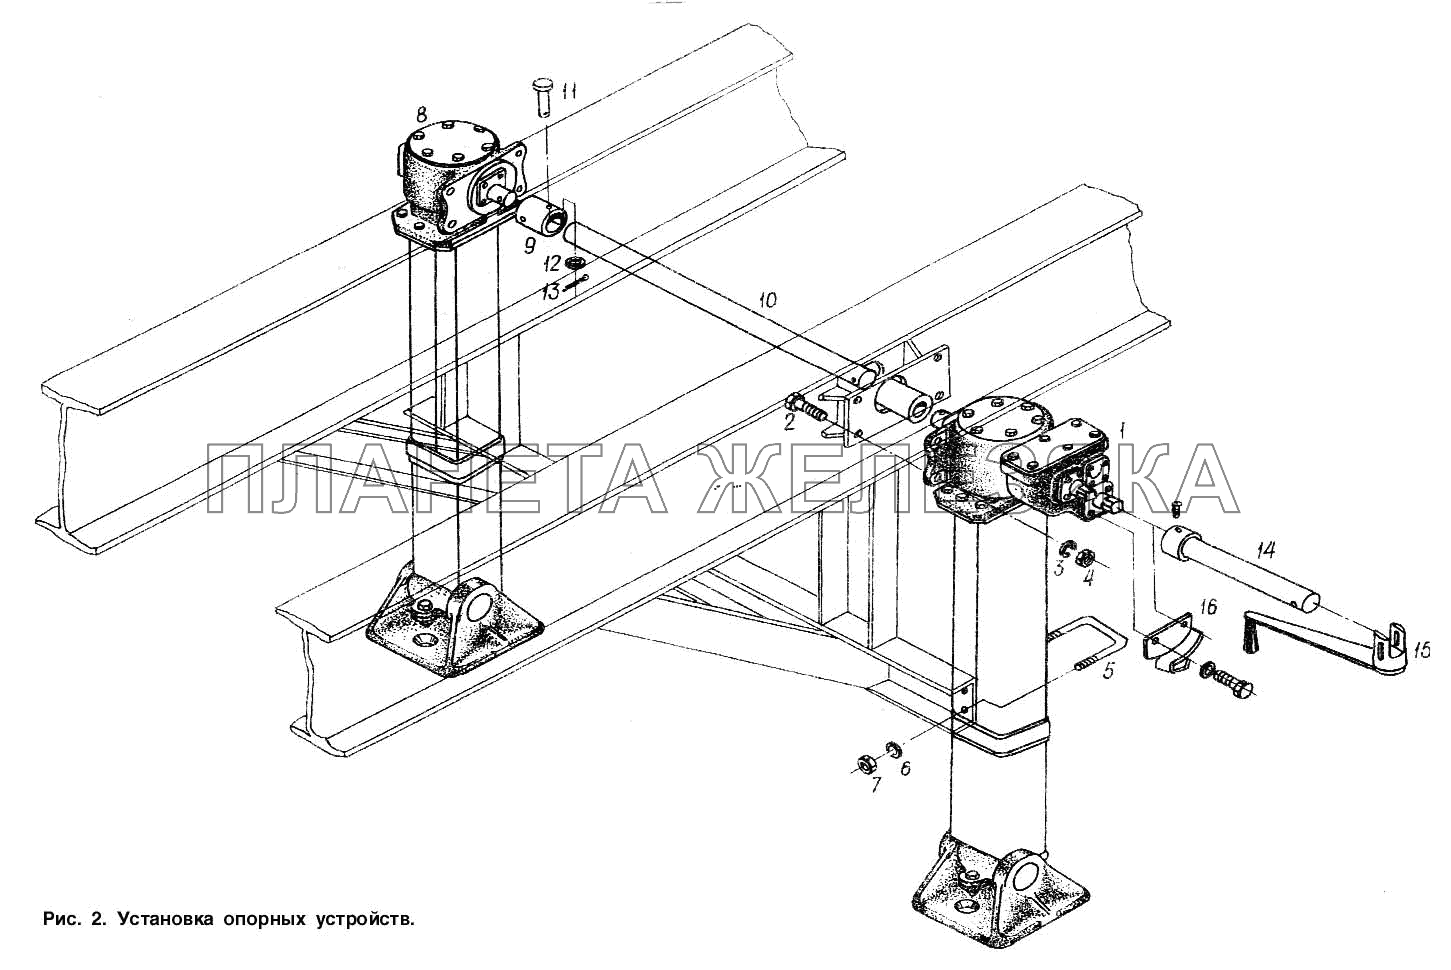 Установка опорных устройств МАЗ-93866